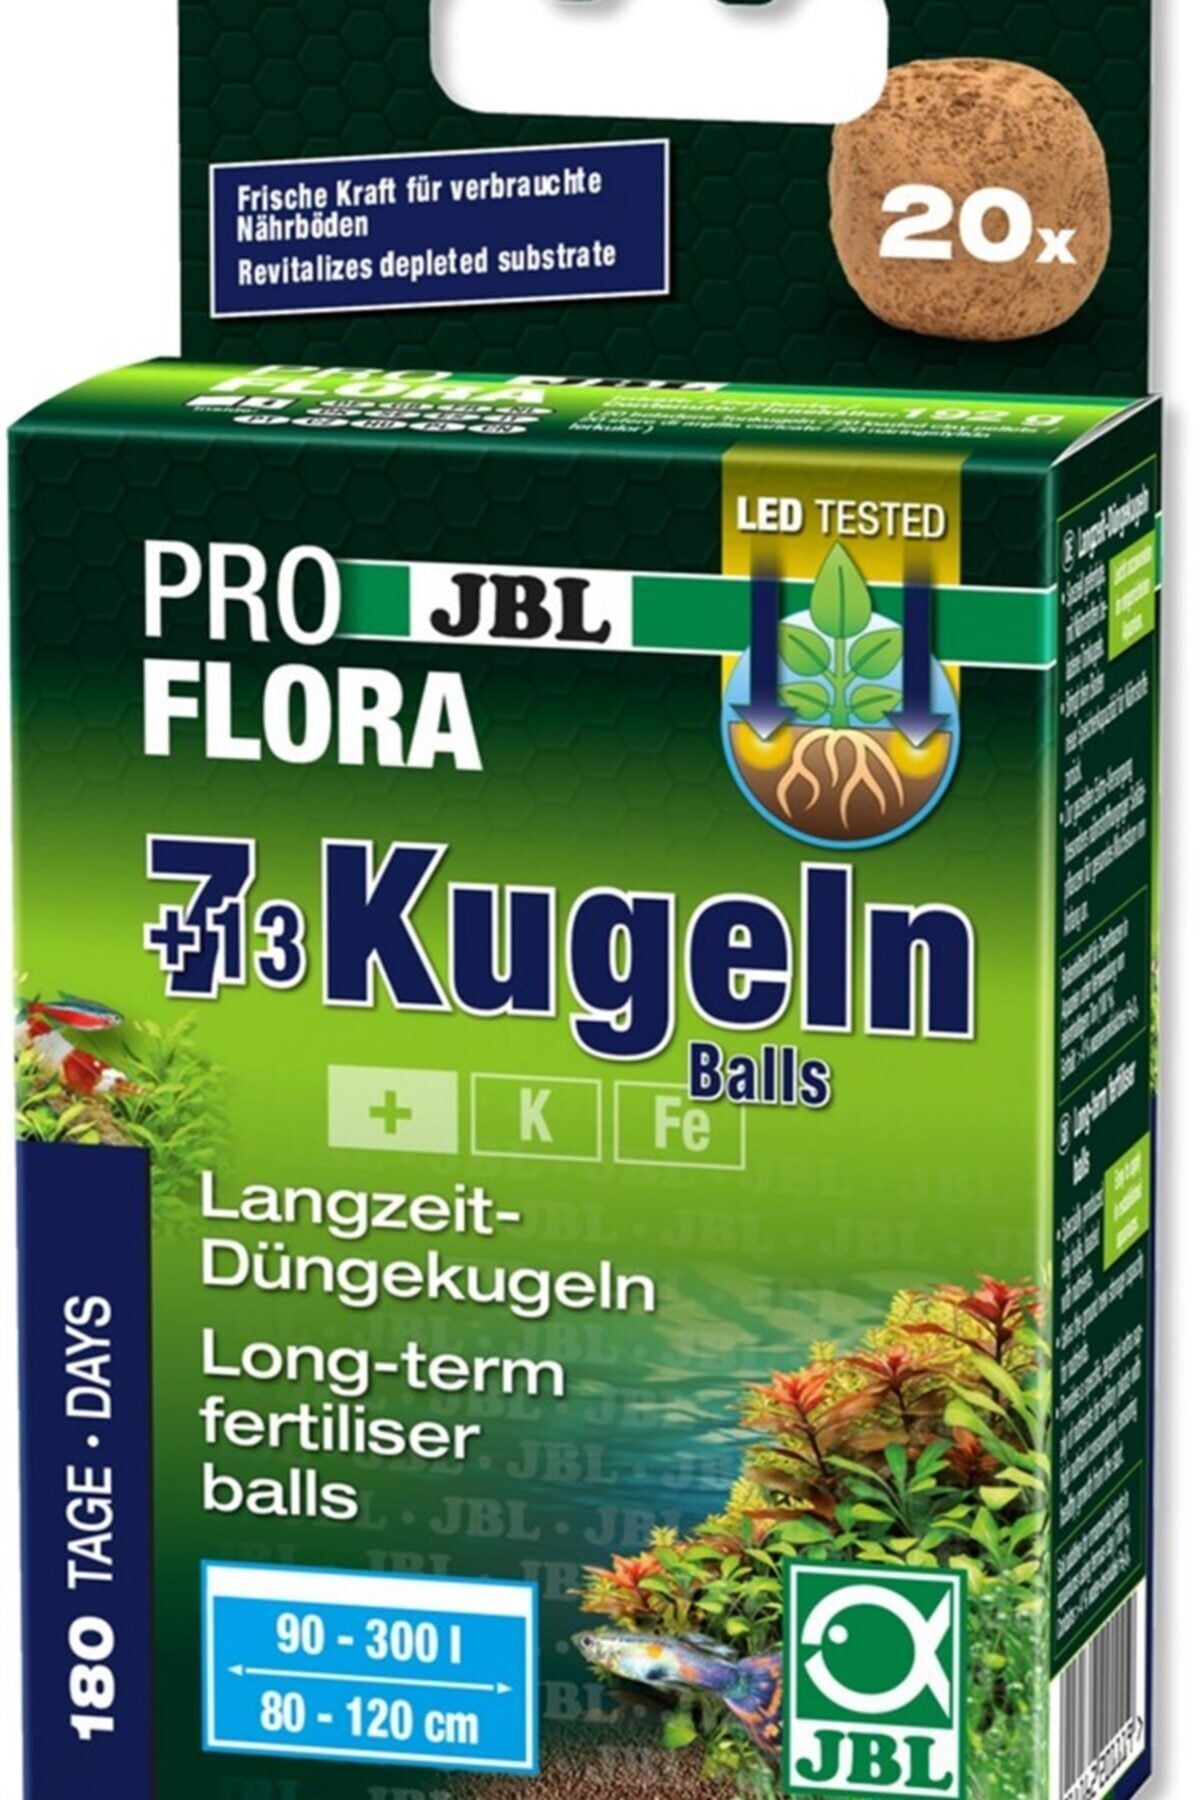 JBL The 7+13 Balls Kök Gübre Topu